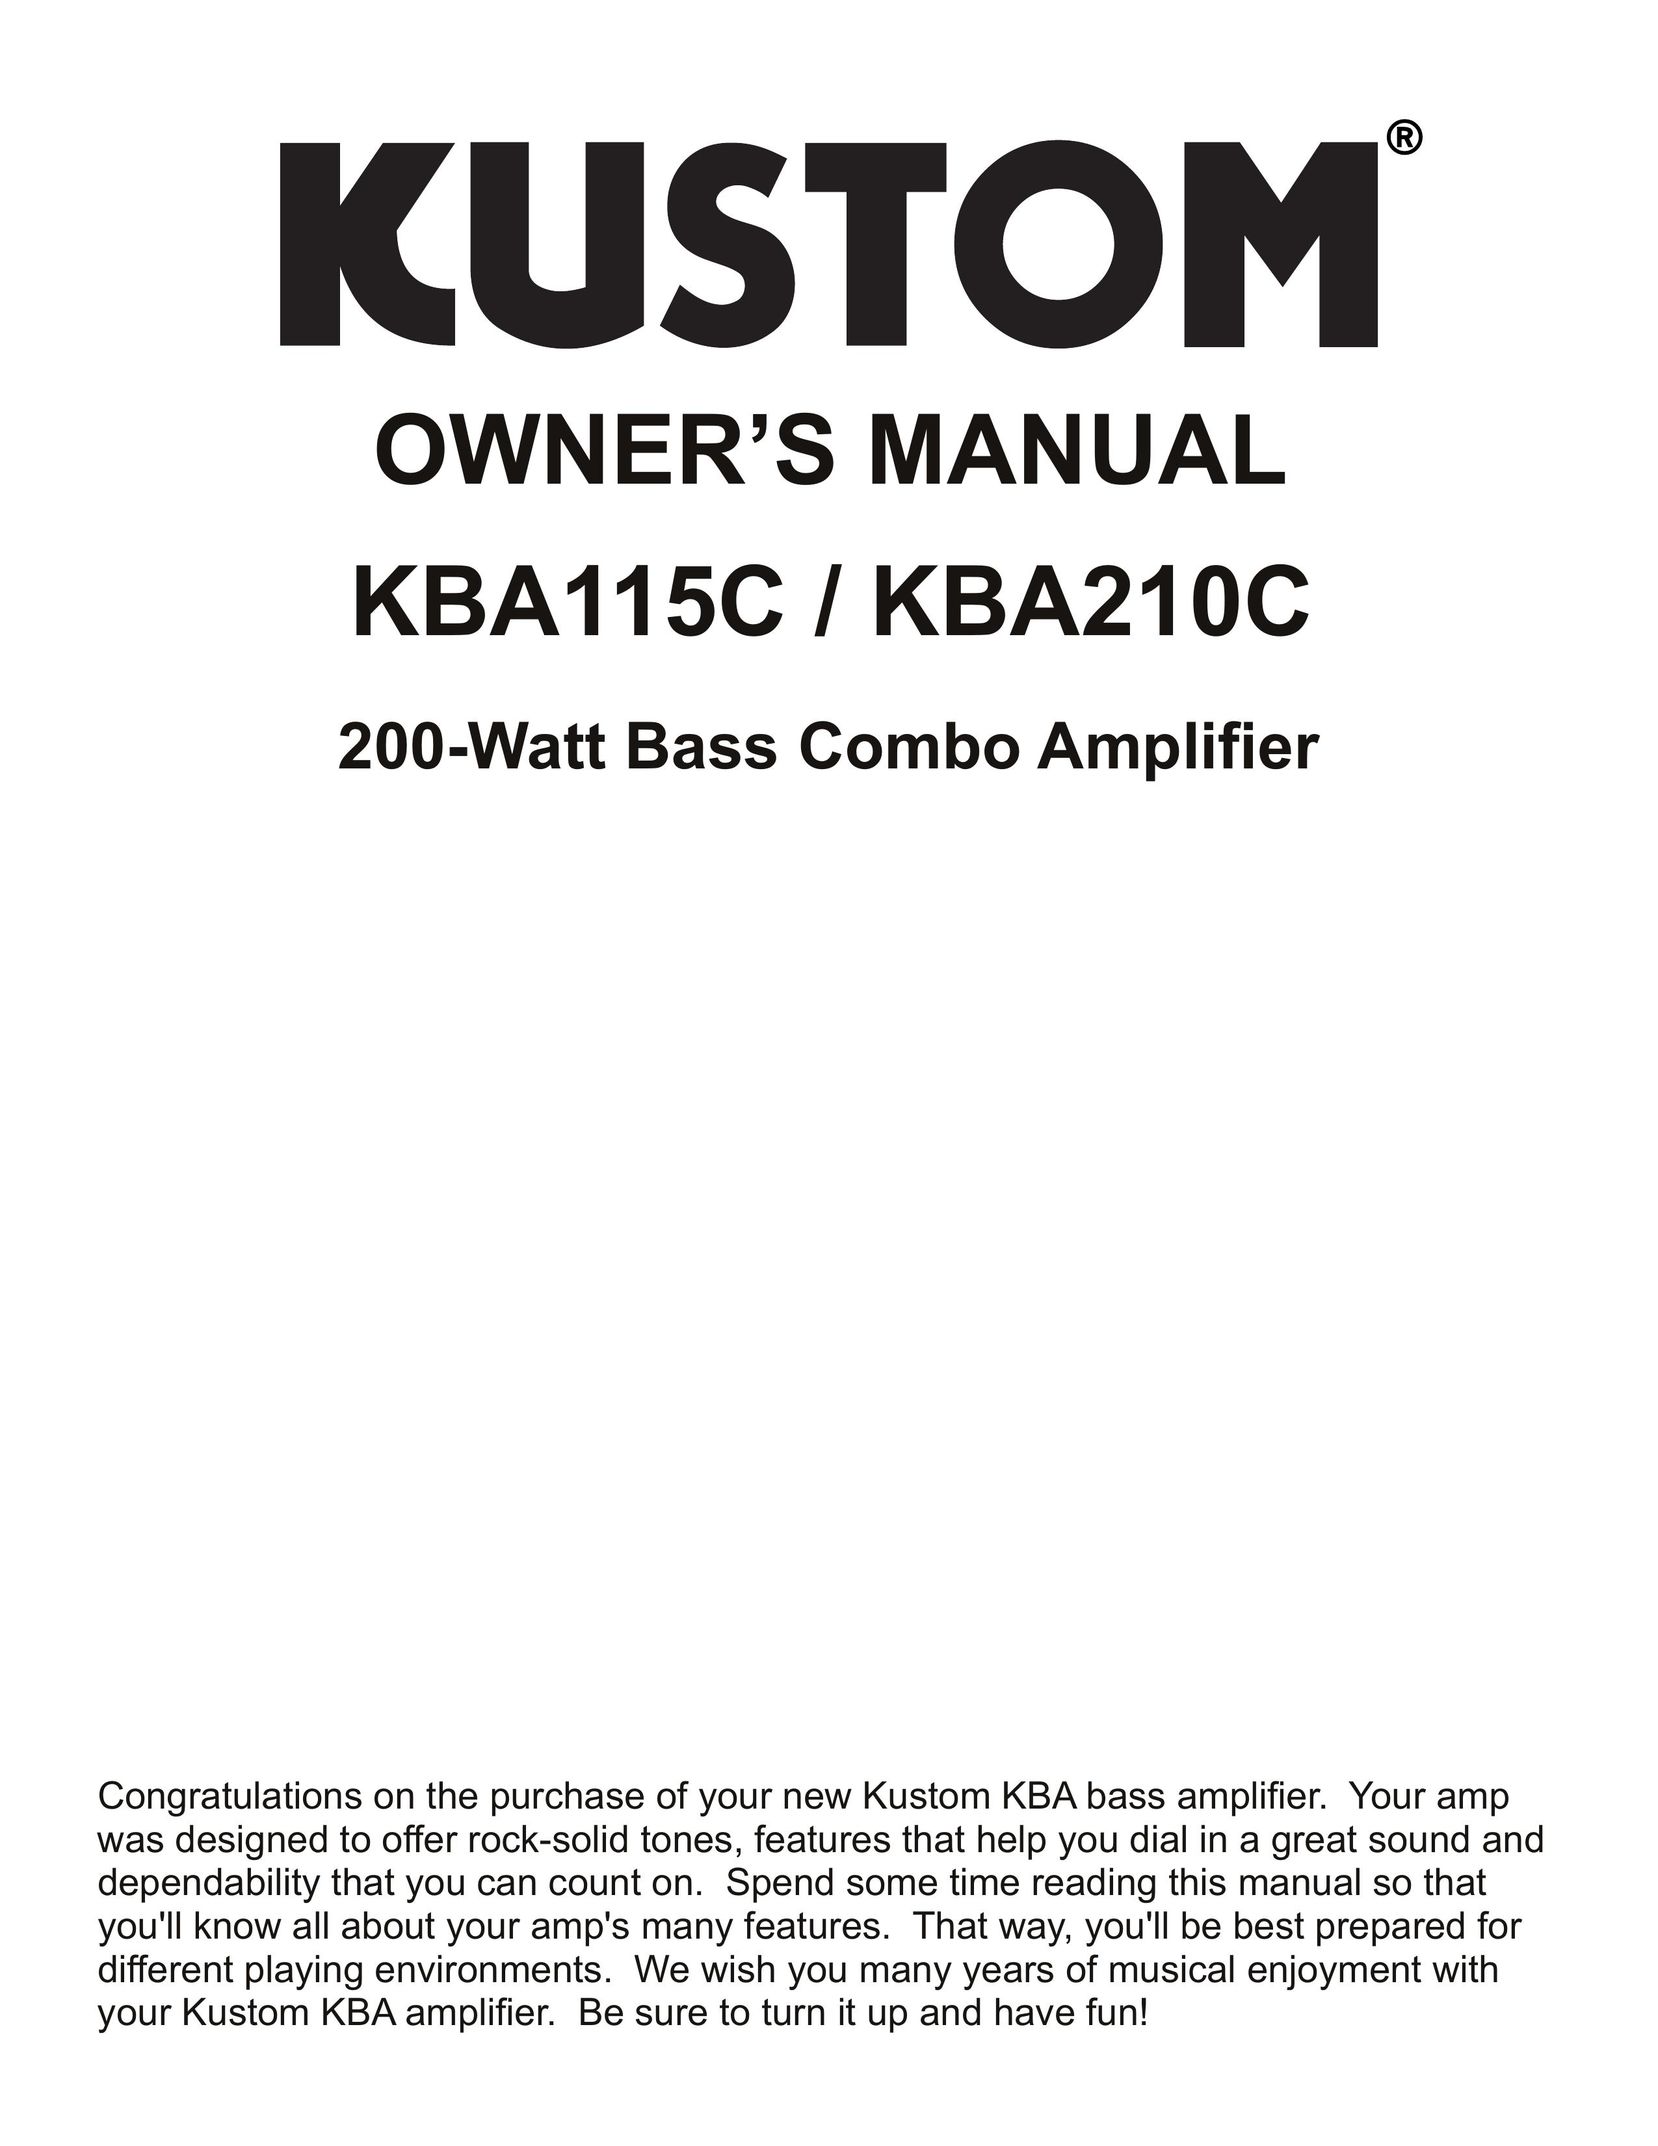 Kustom KBA115C/KBA210C Stereo Amplifier User Manual